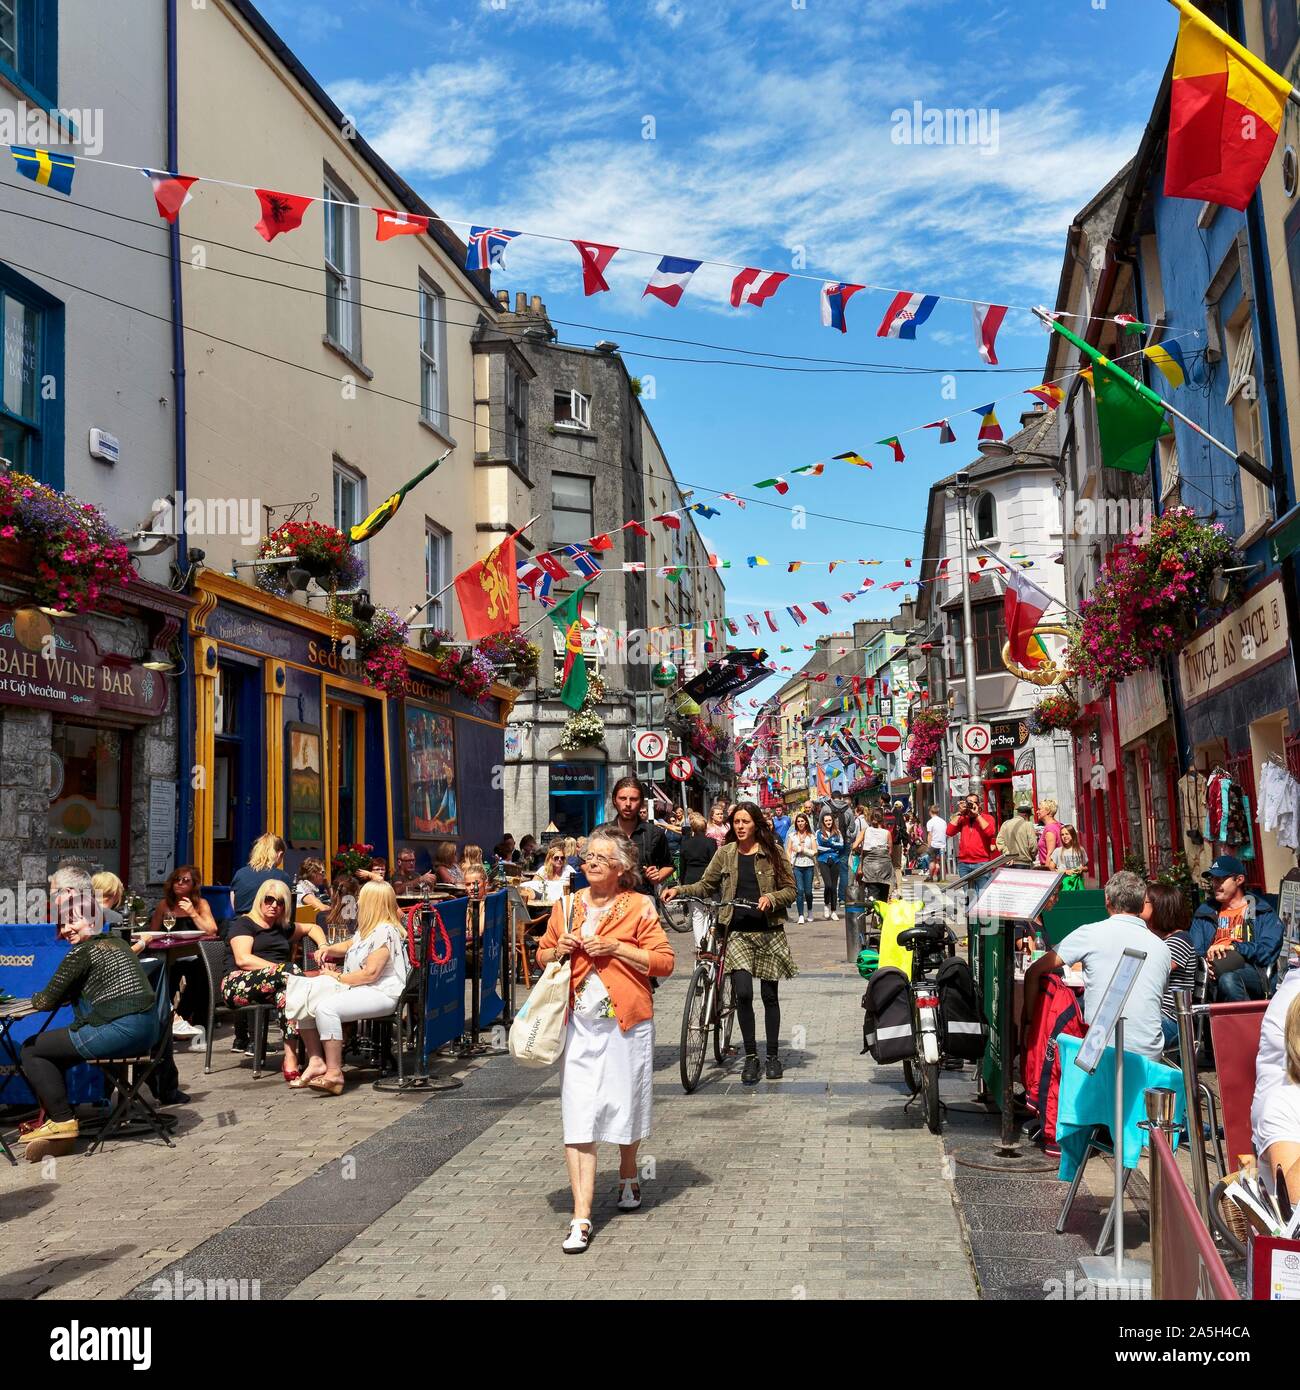 La zona pedonale nel Quartiere Latino, decorata con bandiere, Galway, Irlanda Foto Stock